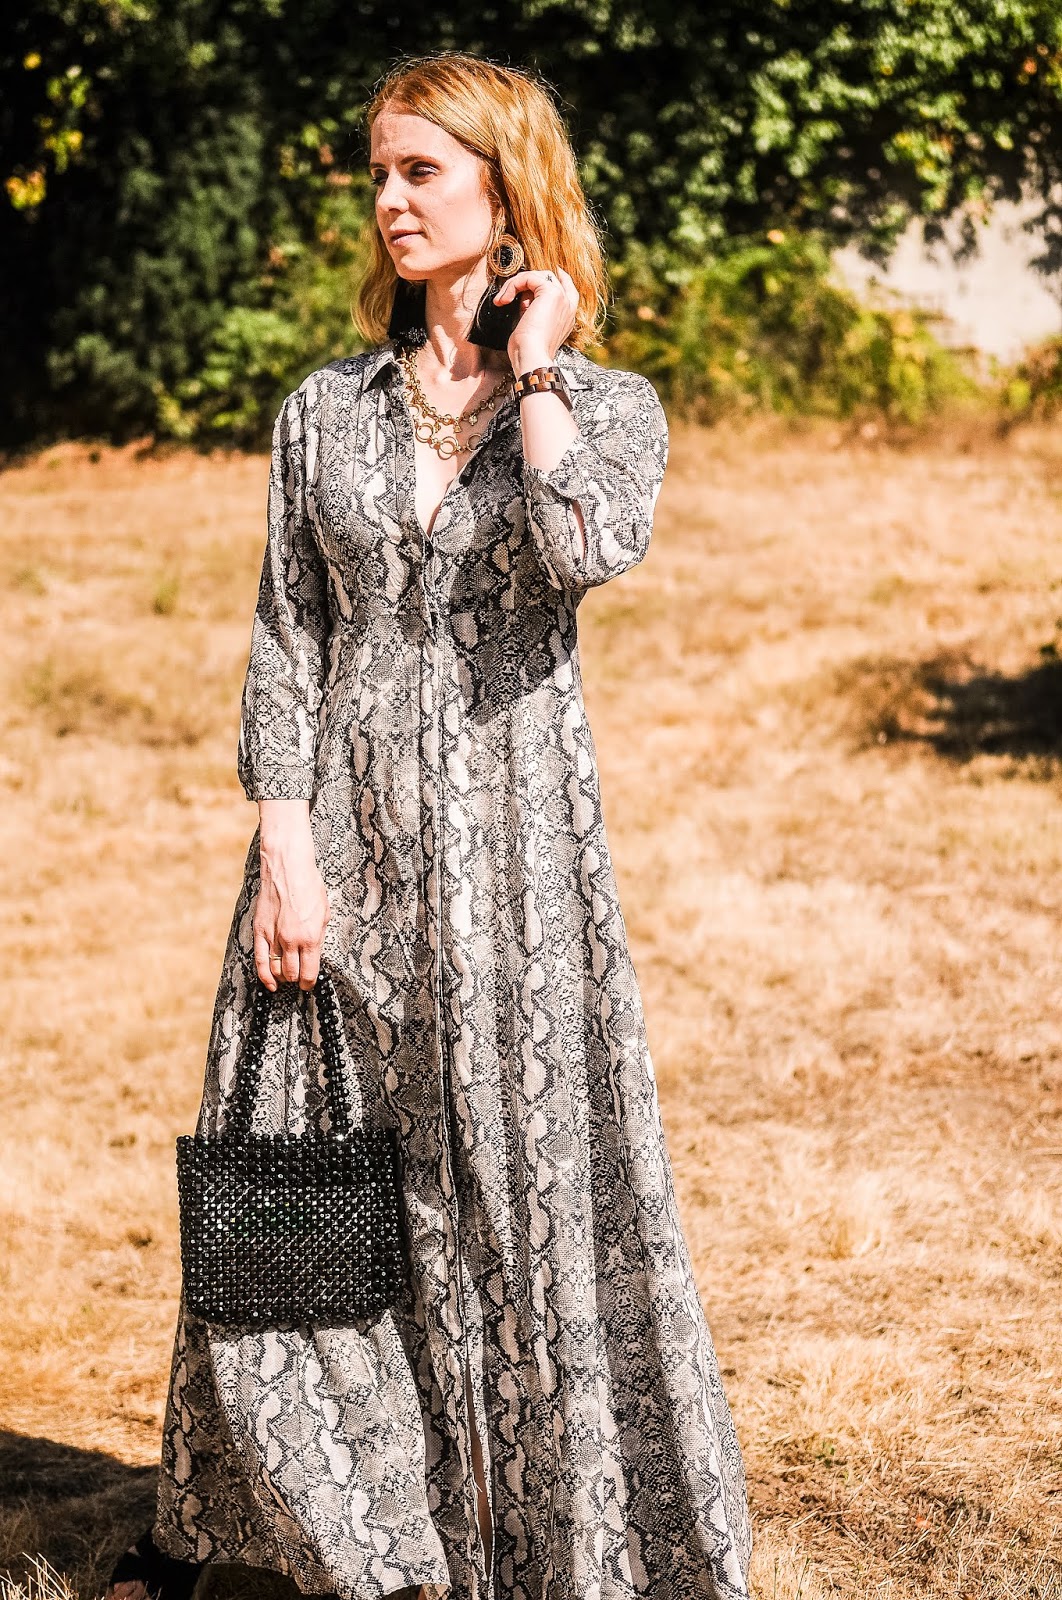 Vestido con estampado - Ingrid Hughes - Blog de moda, looks, belleza, tendencias y viajes